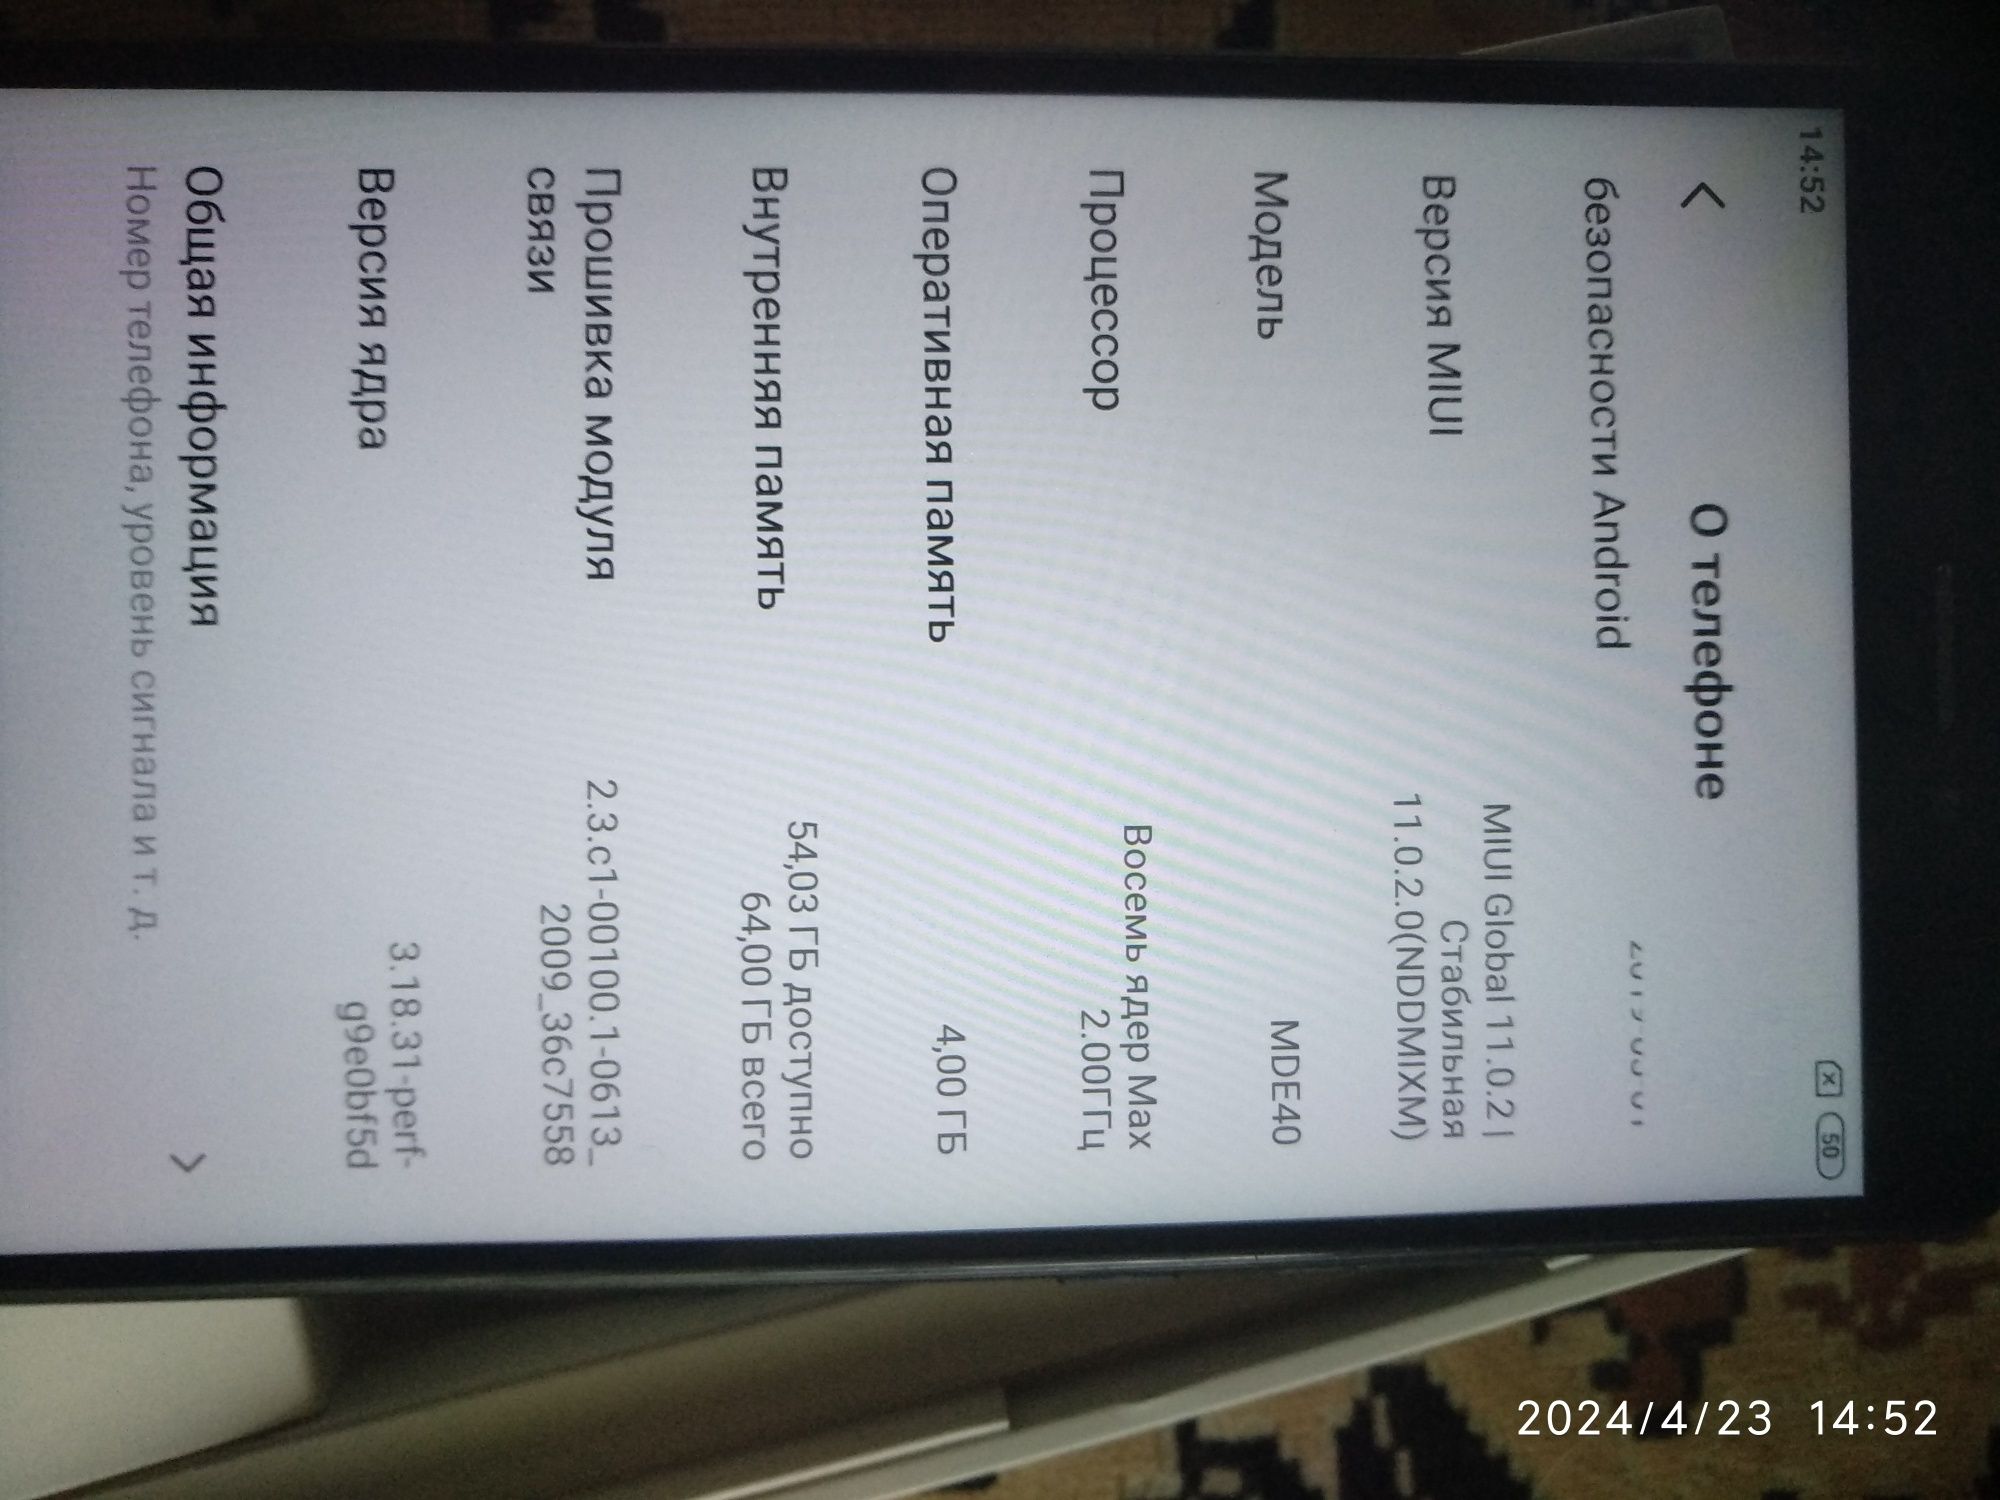 Гаджет Mi Max 2 Xiaomi
Диагональ экрана 6,44 в идеальном состоянии